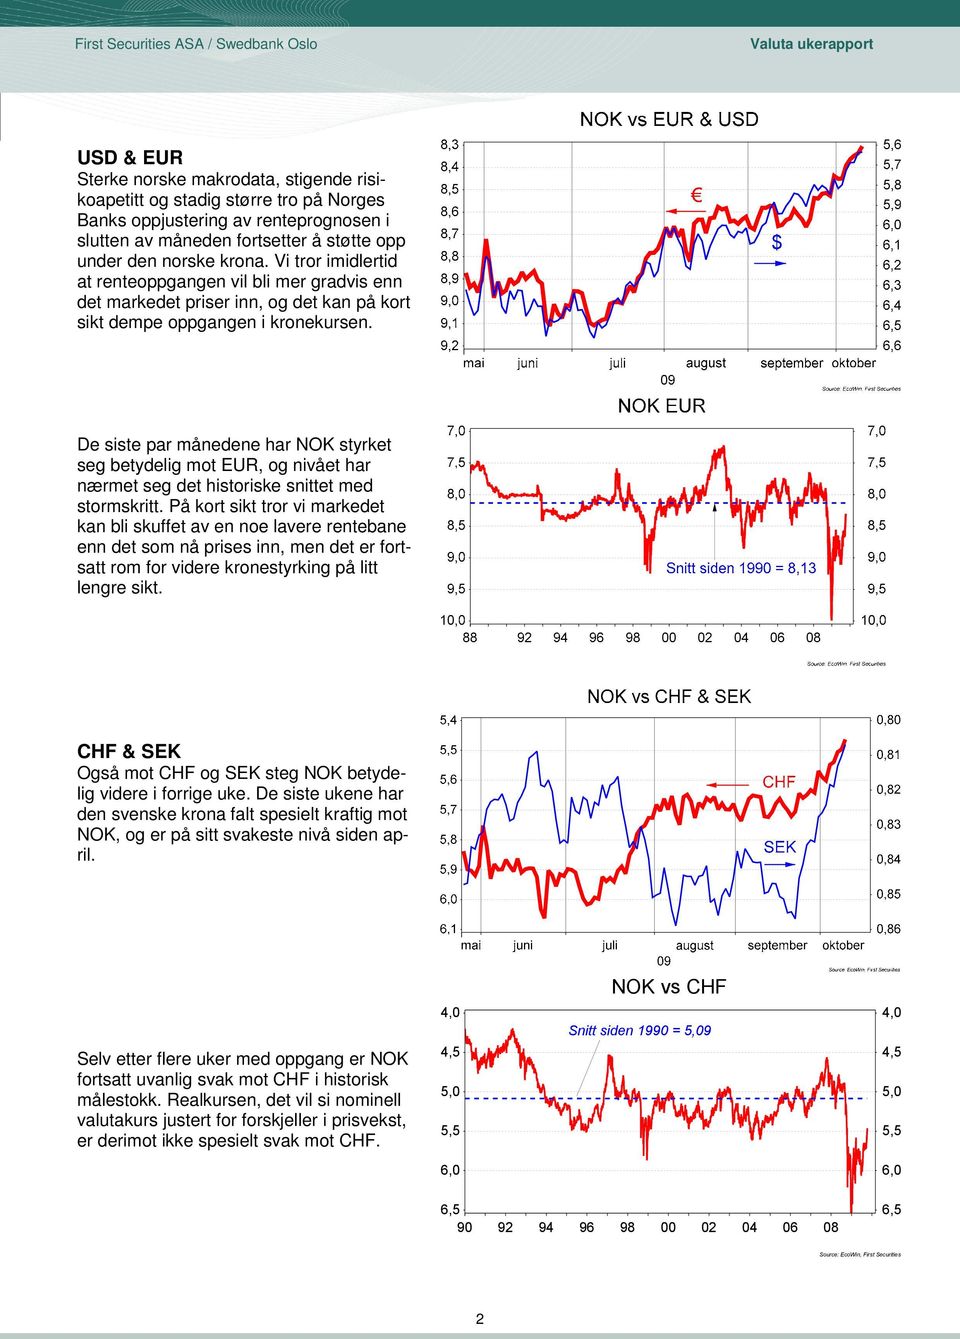 De siste par månedene har NOK styrket seg betydelig mot EUR, og nivået har nærmet seg det historiske snittet med stormskritt.